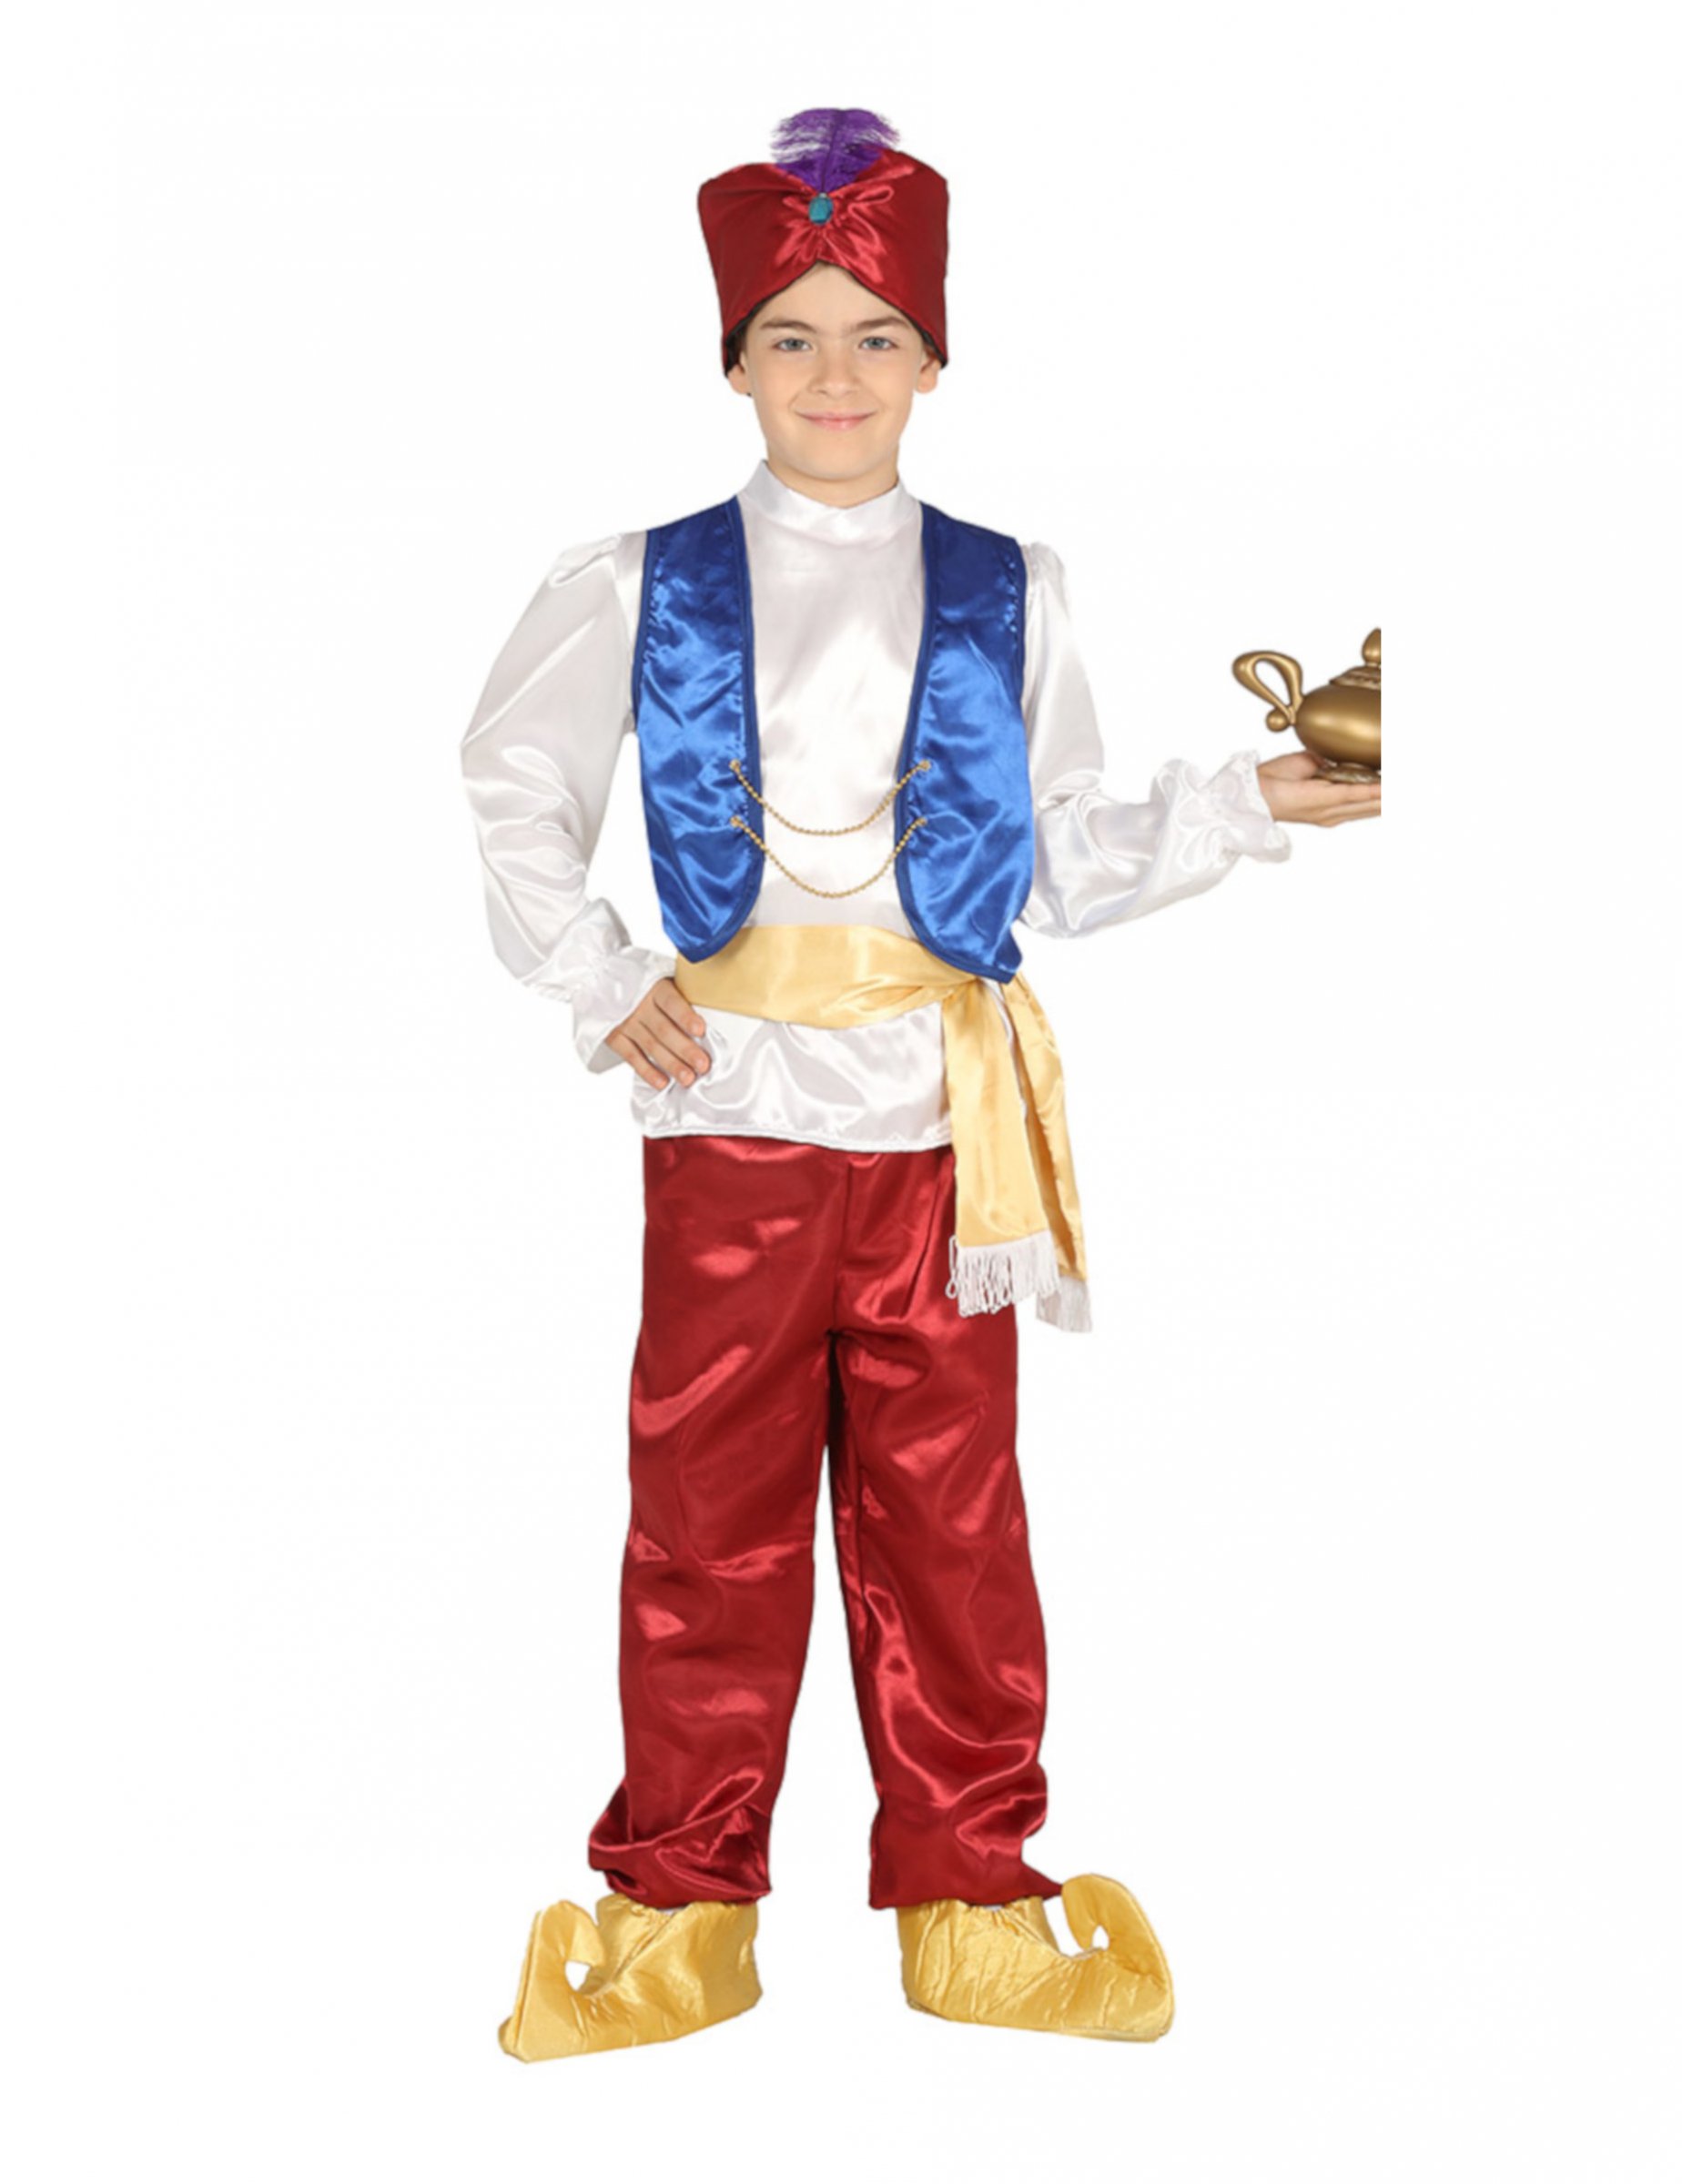 Wüstenprinz-Kostüm für Jungen Faschingskostüm rot-weiss-blau von FIESTAS GUIRCA, S.L.